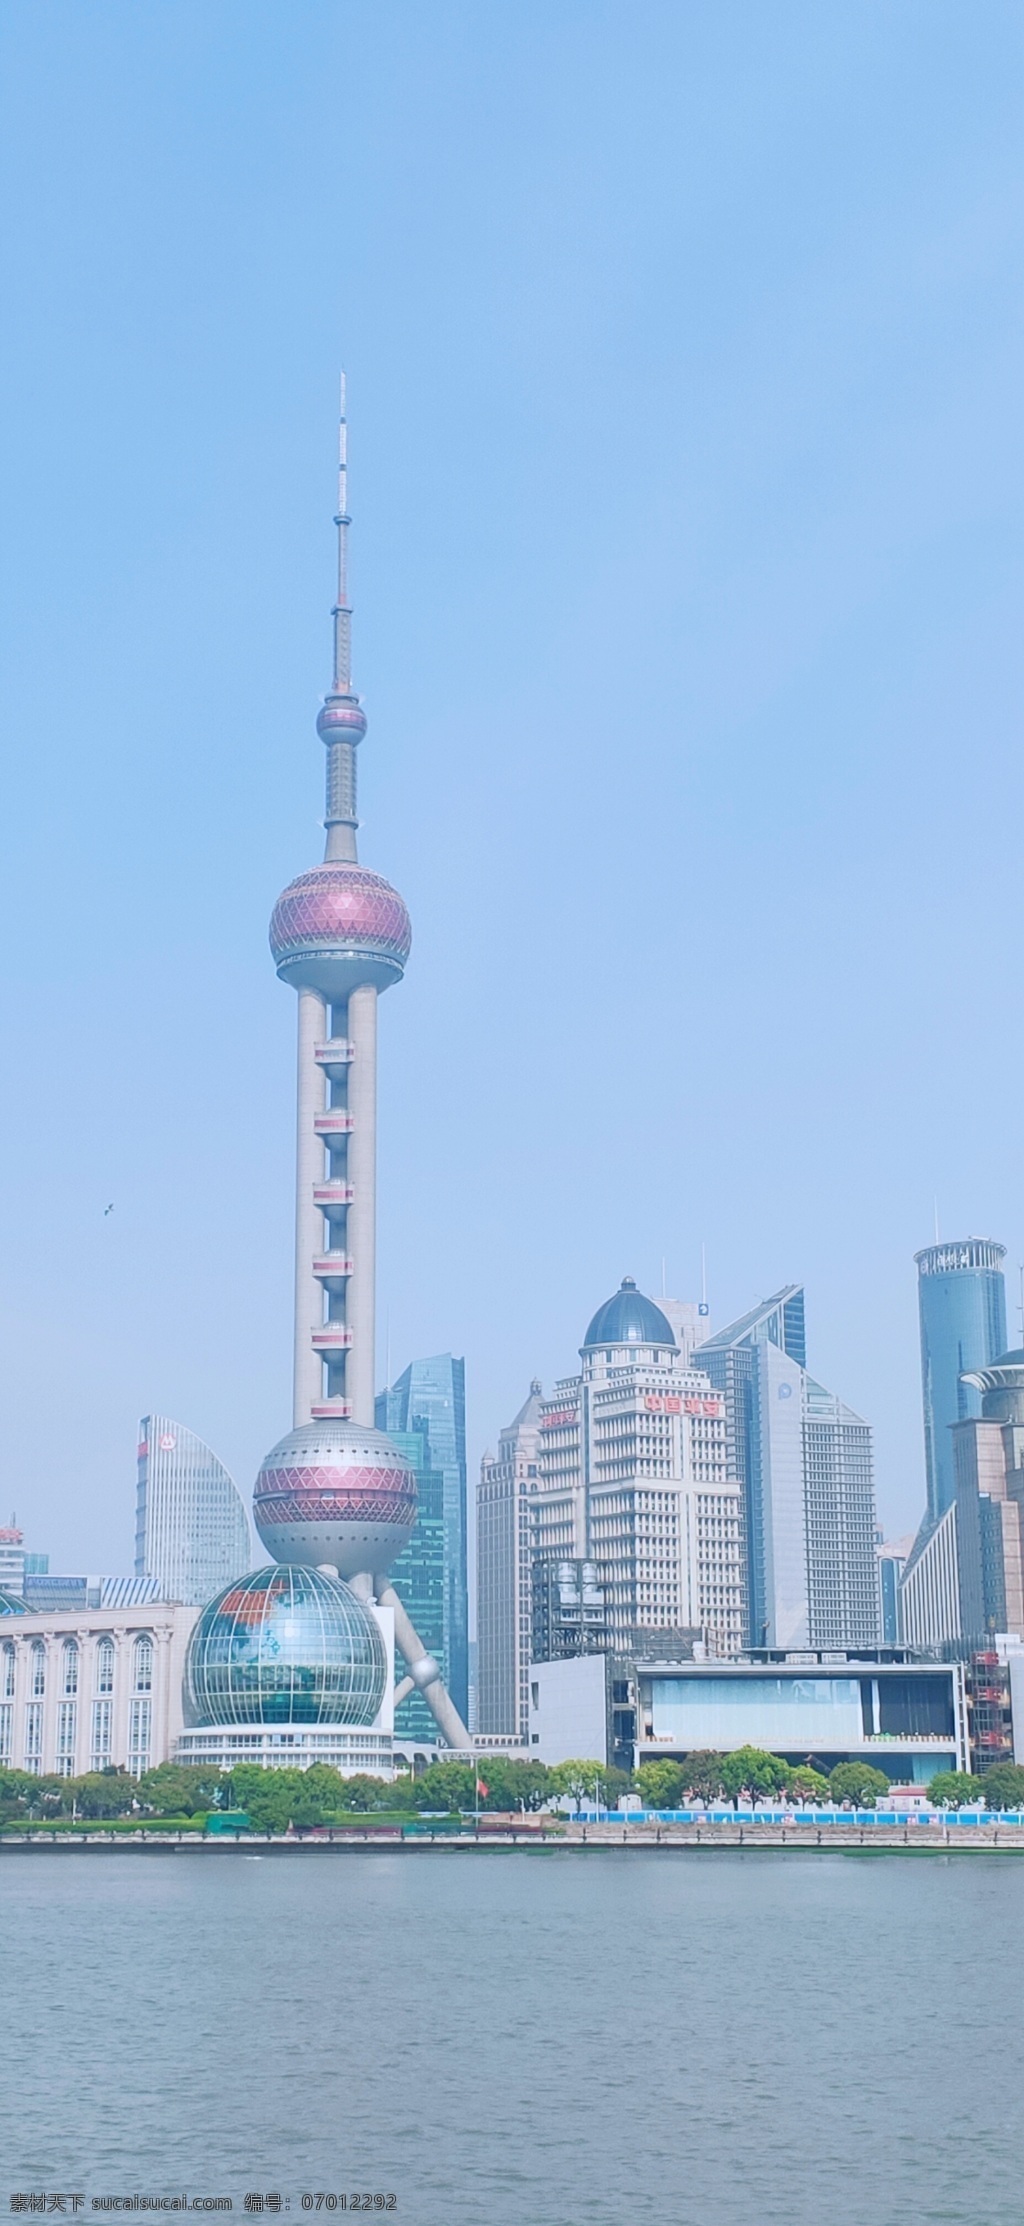 上海东方明珠 上海 黄浦江 东方明珠塔 上海建筑 建筑物 建筑园林 建筑摄影